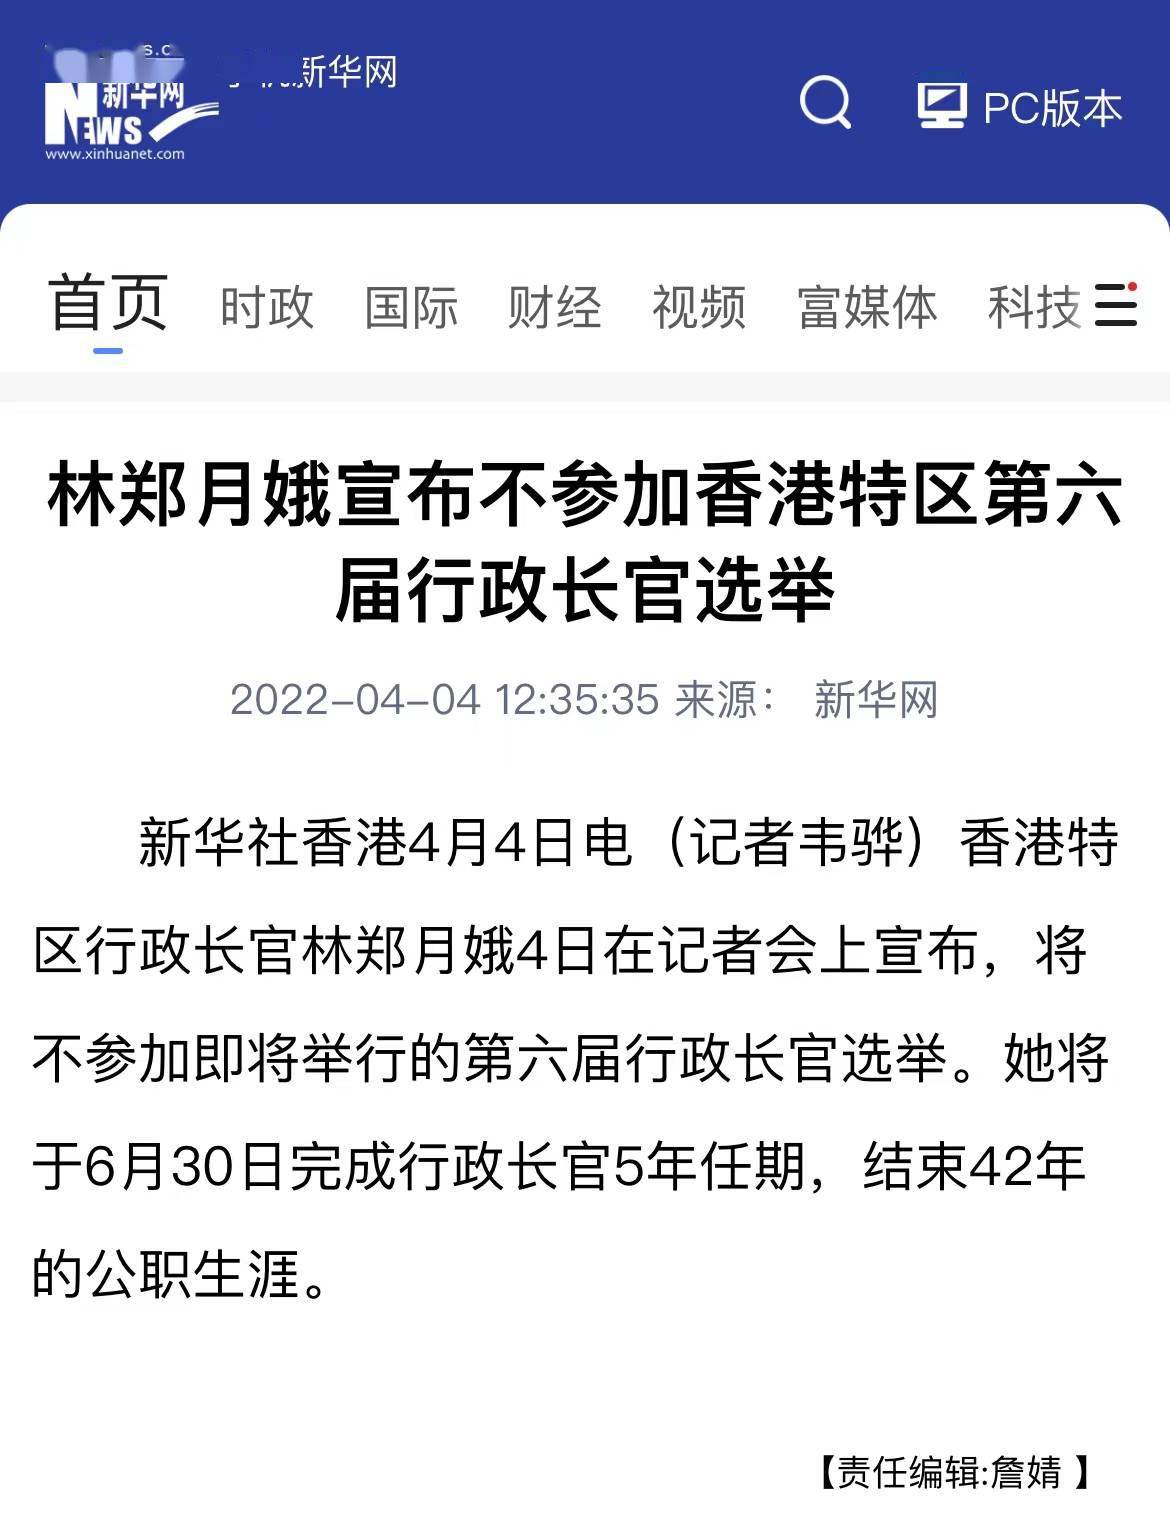 林郑月娥宣布不参加香港特区第六届行政长官选举 林郑月娥宣布不参加下届特首选举 任期 会上